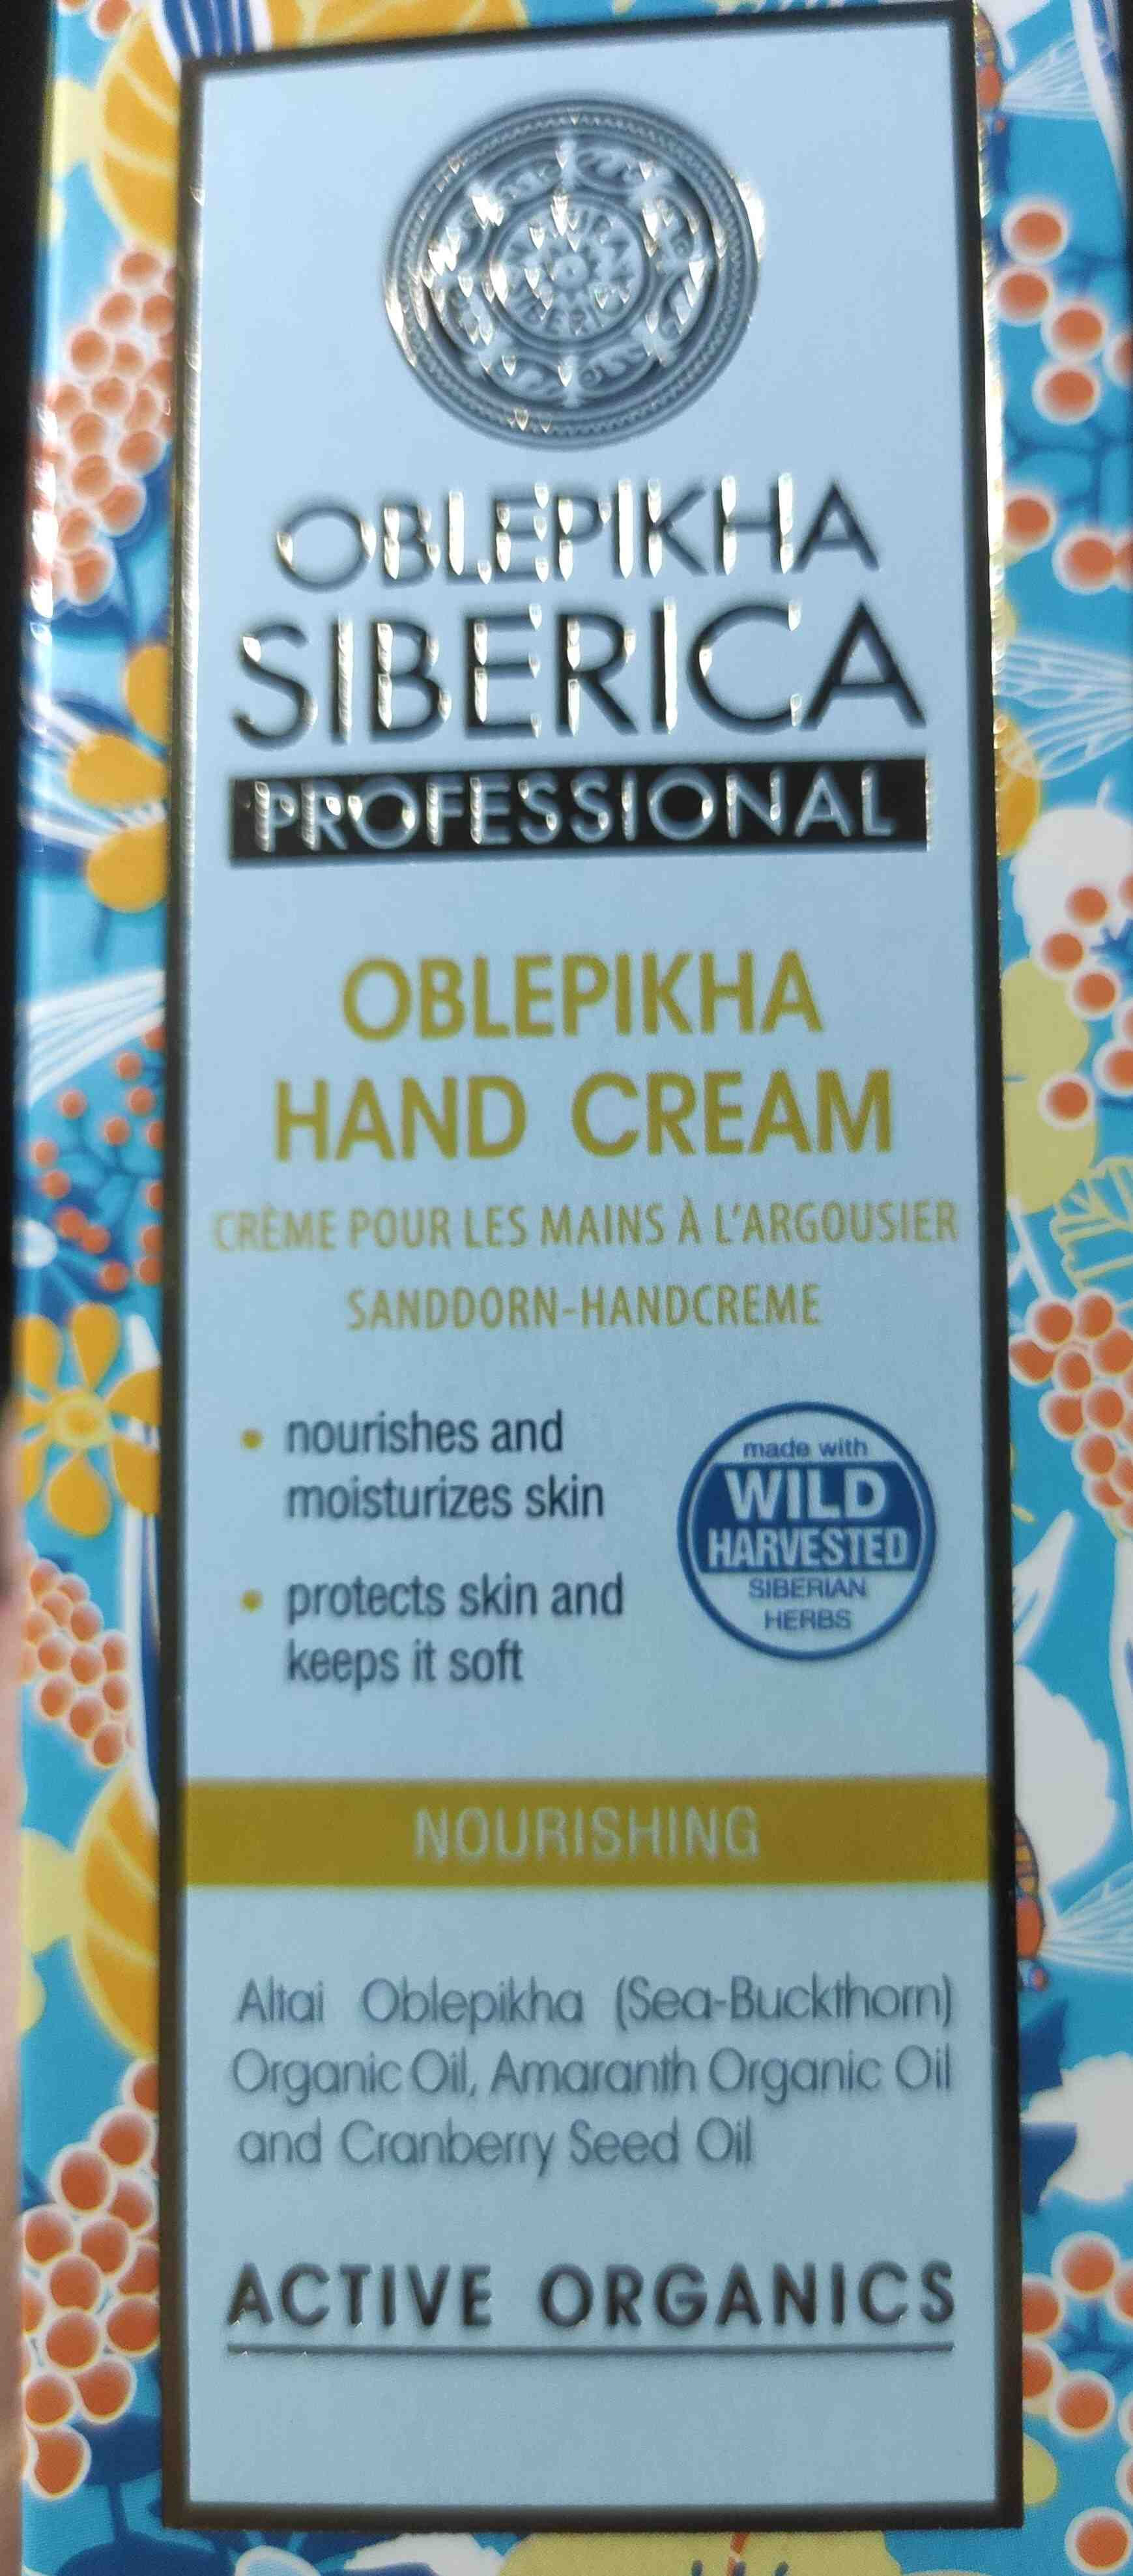 Oblekpikha Hand Cream - Producte - en